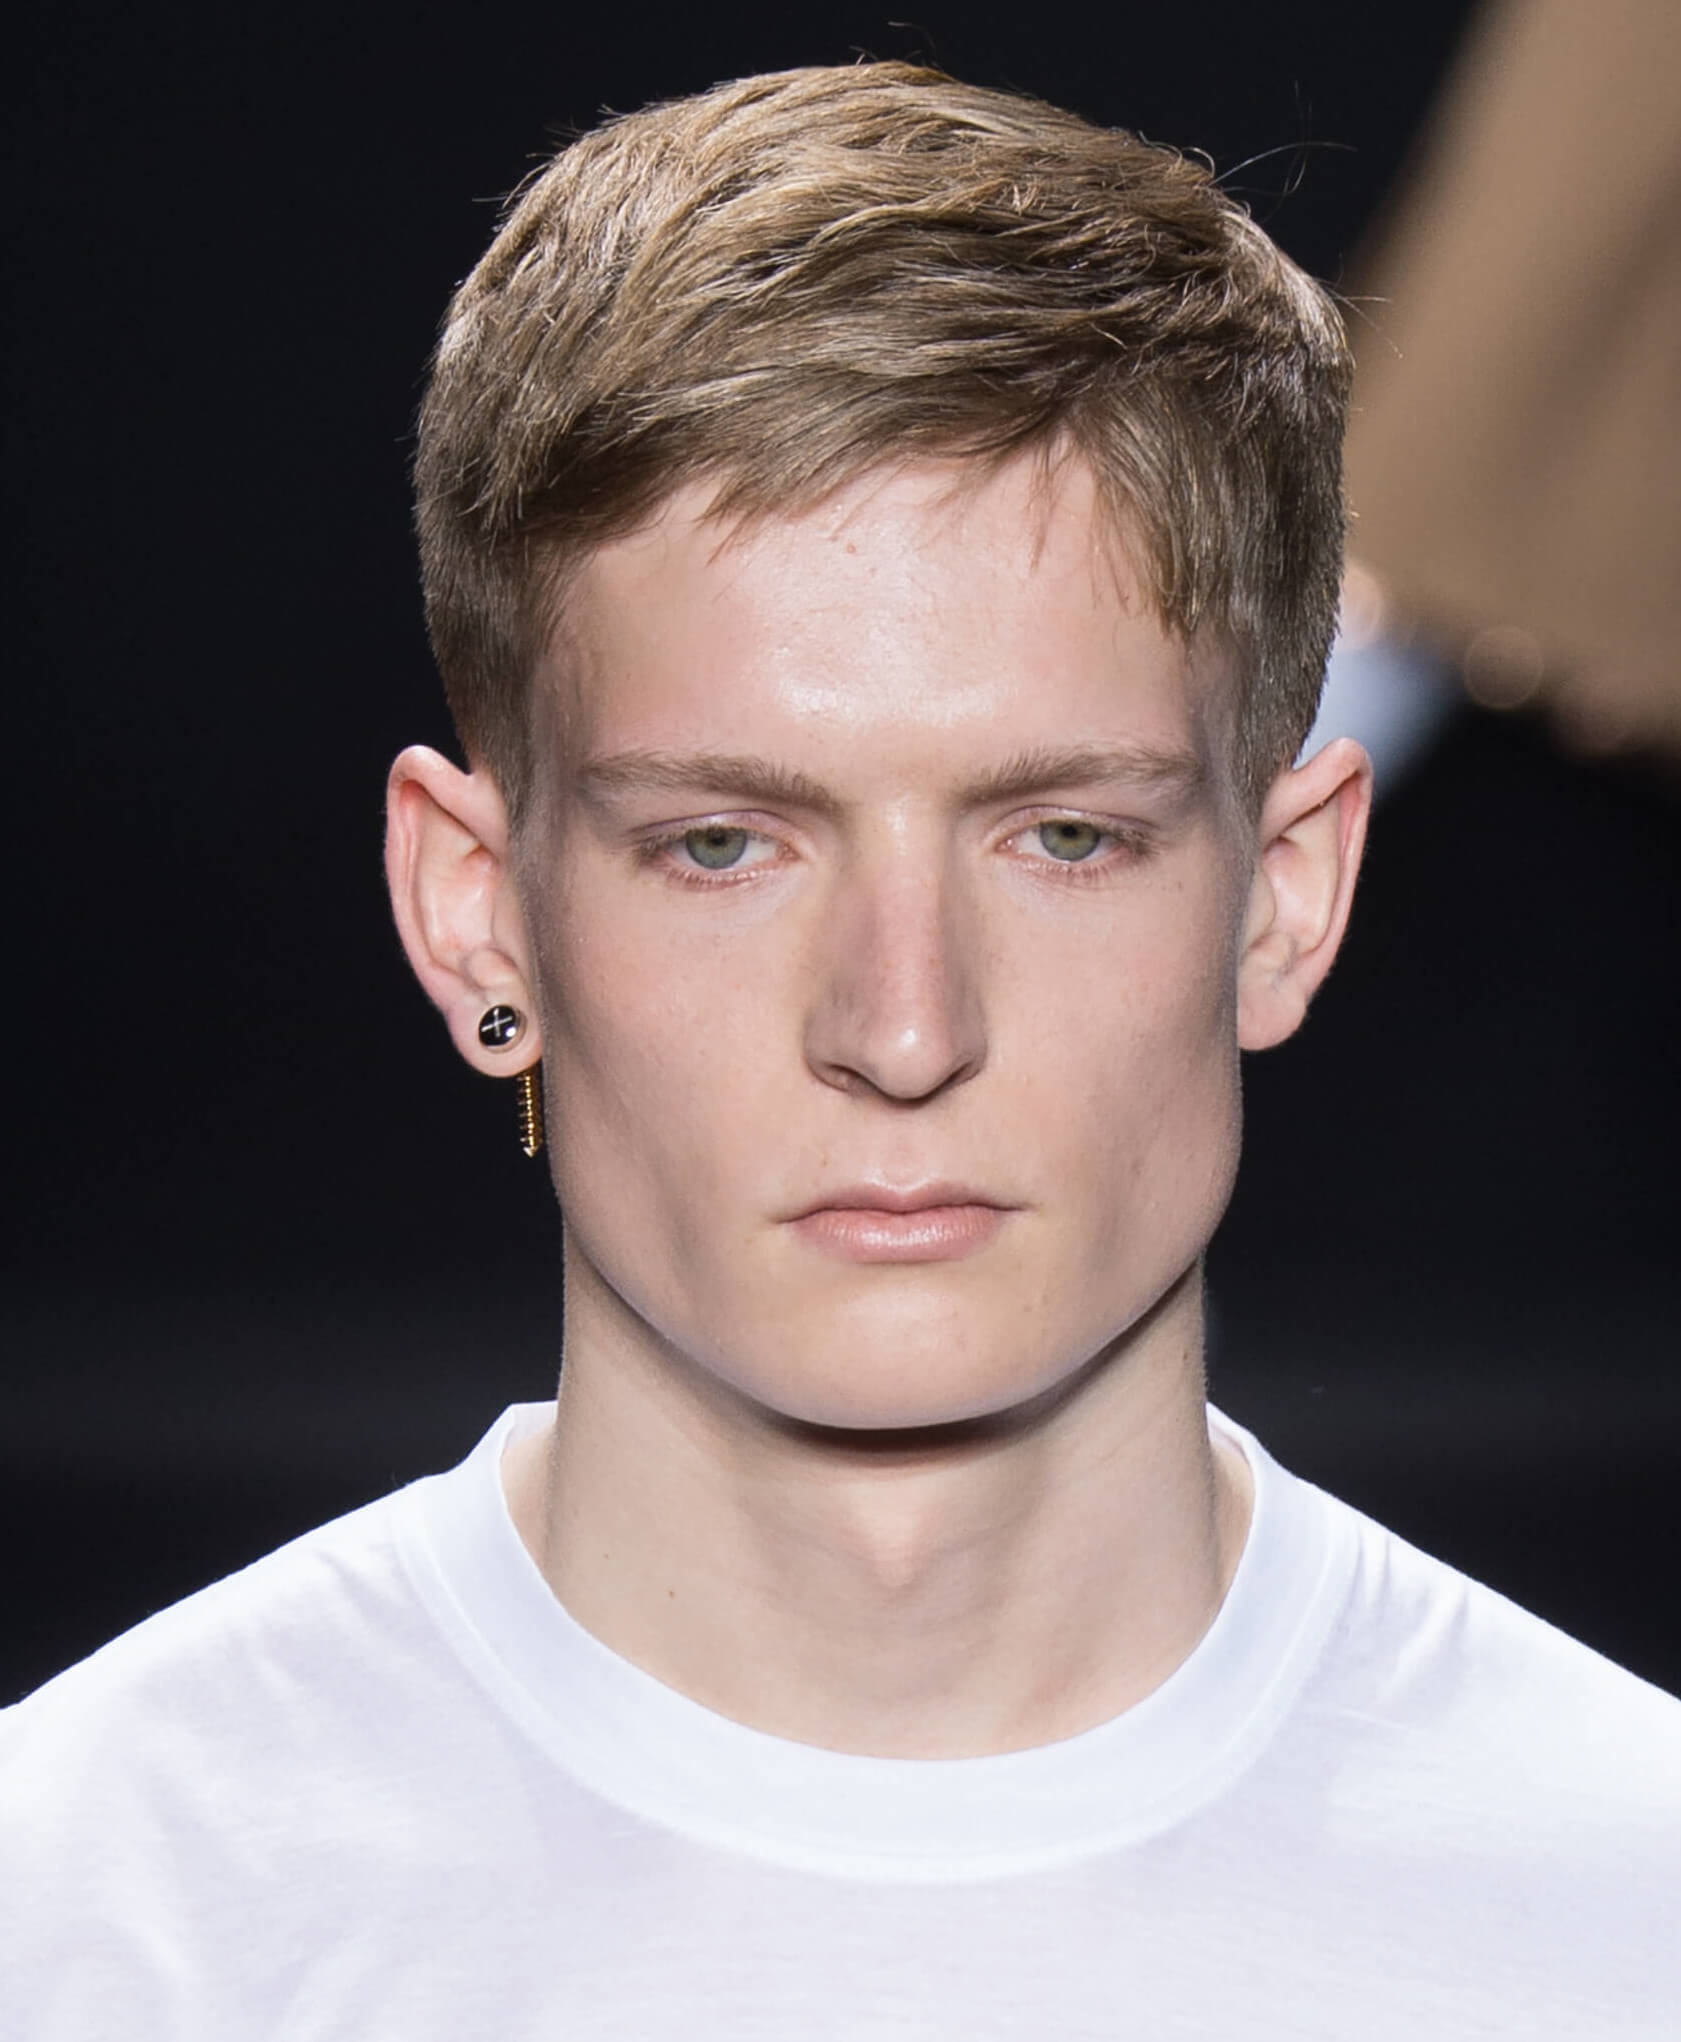 Male Model Hairstyle for Medium Length Hair | Jon kortajarena, Haircuts for  men, Trending haircuts